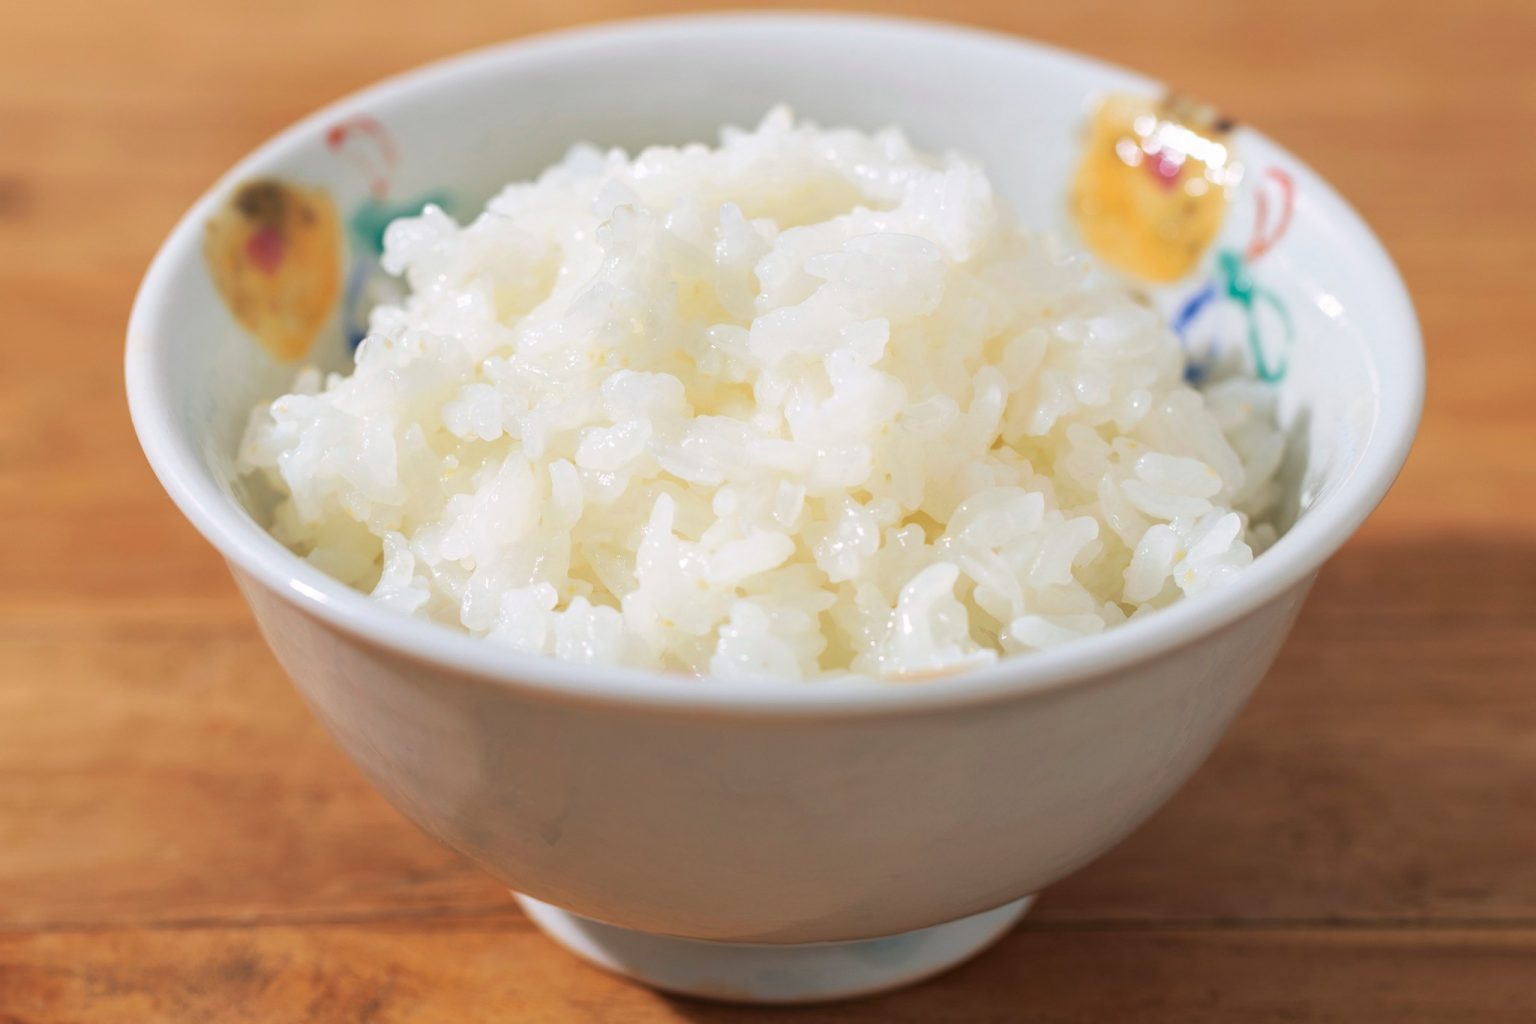 おいしさも栄養価も備えたBG無洗米。夏は30分、冬は1時間ほど浸水させることでふっくらとおいしい炊きあがりに。ツヤツヤと輝くお米は甘みも旨みもたっぷり。